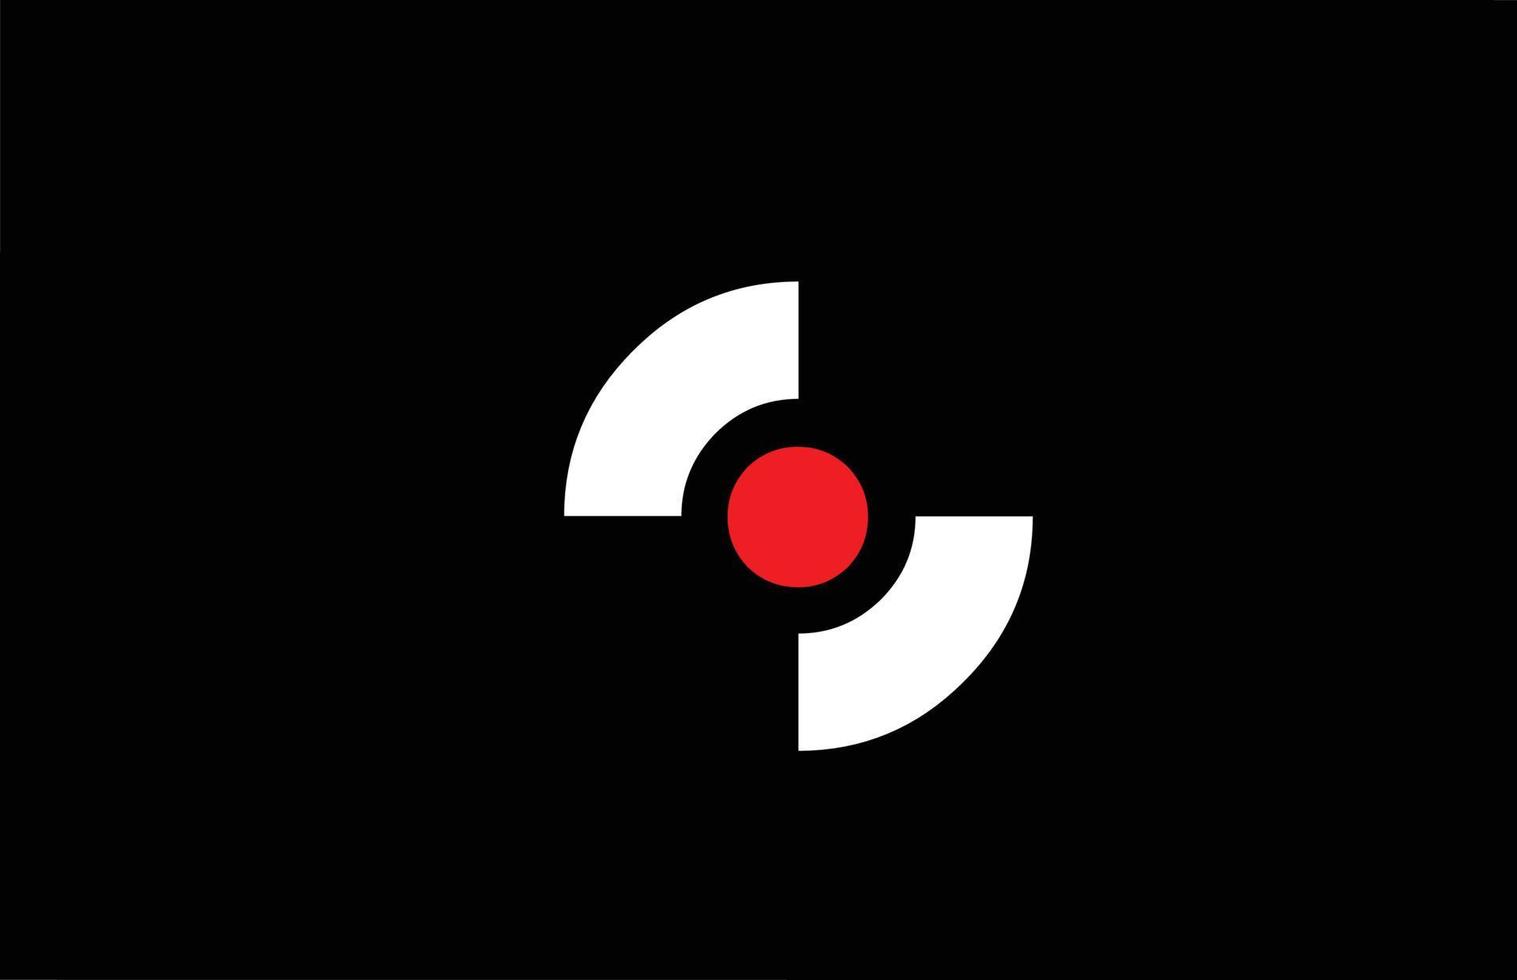 Diseño del logotipo del icono de la letra del alfabeto s. plantilla creativa para empresas y negocios con punto rojo en blanco y negro vector